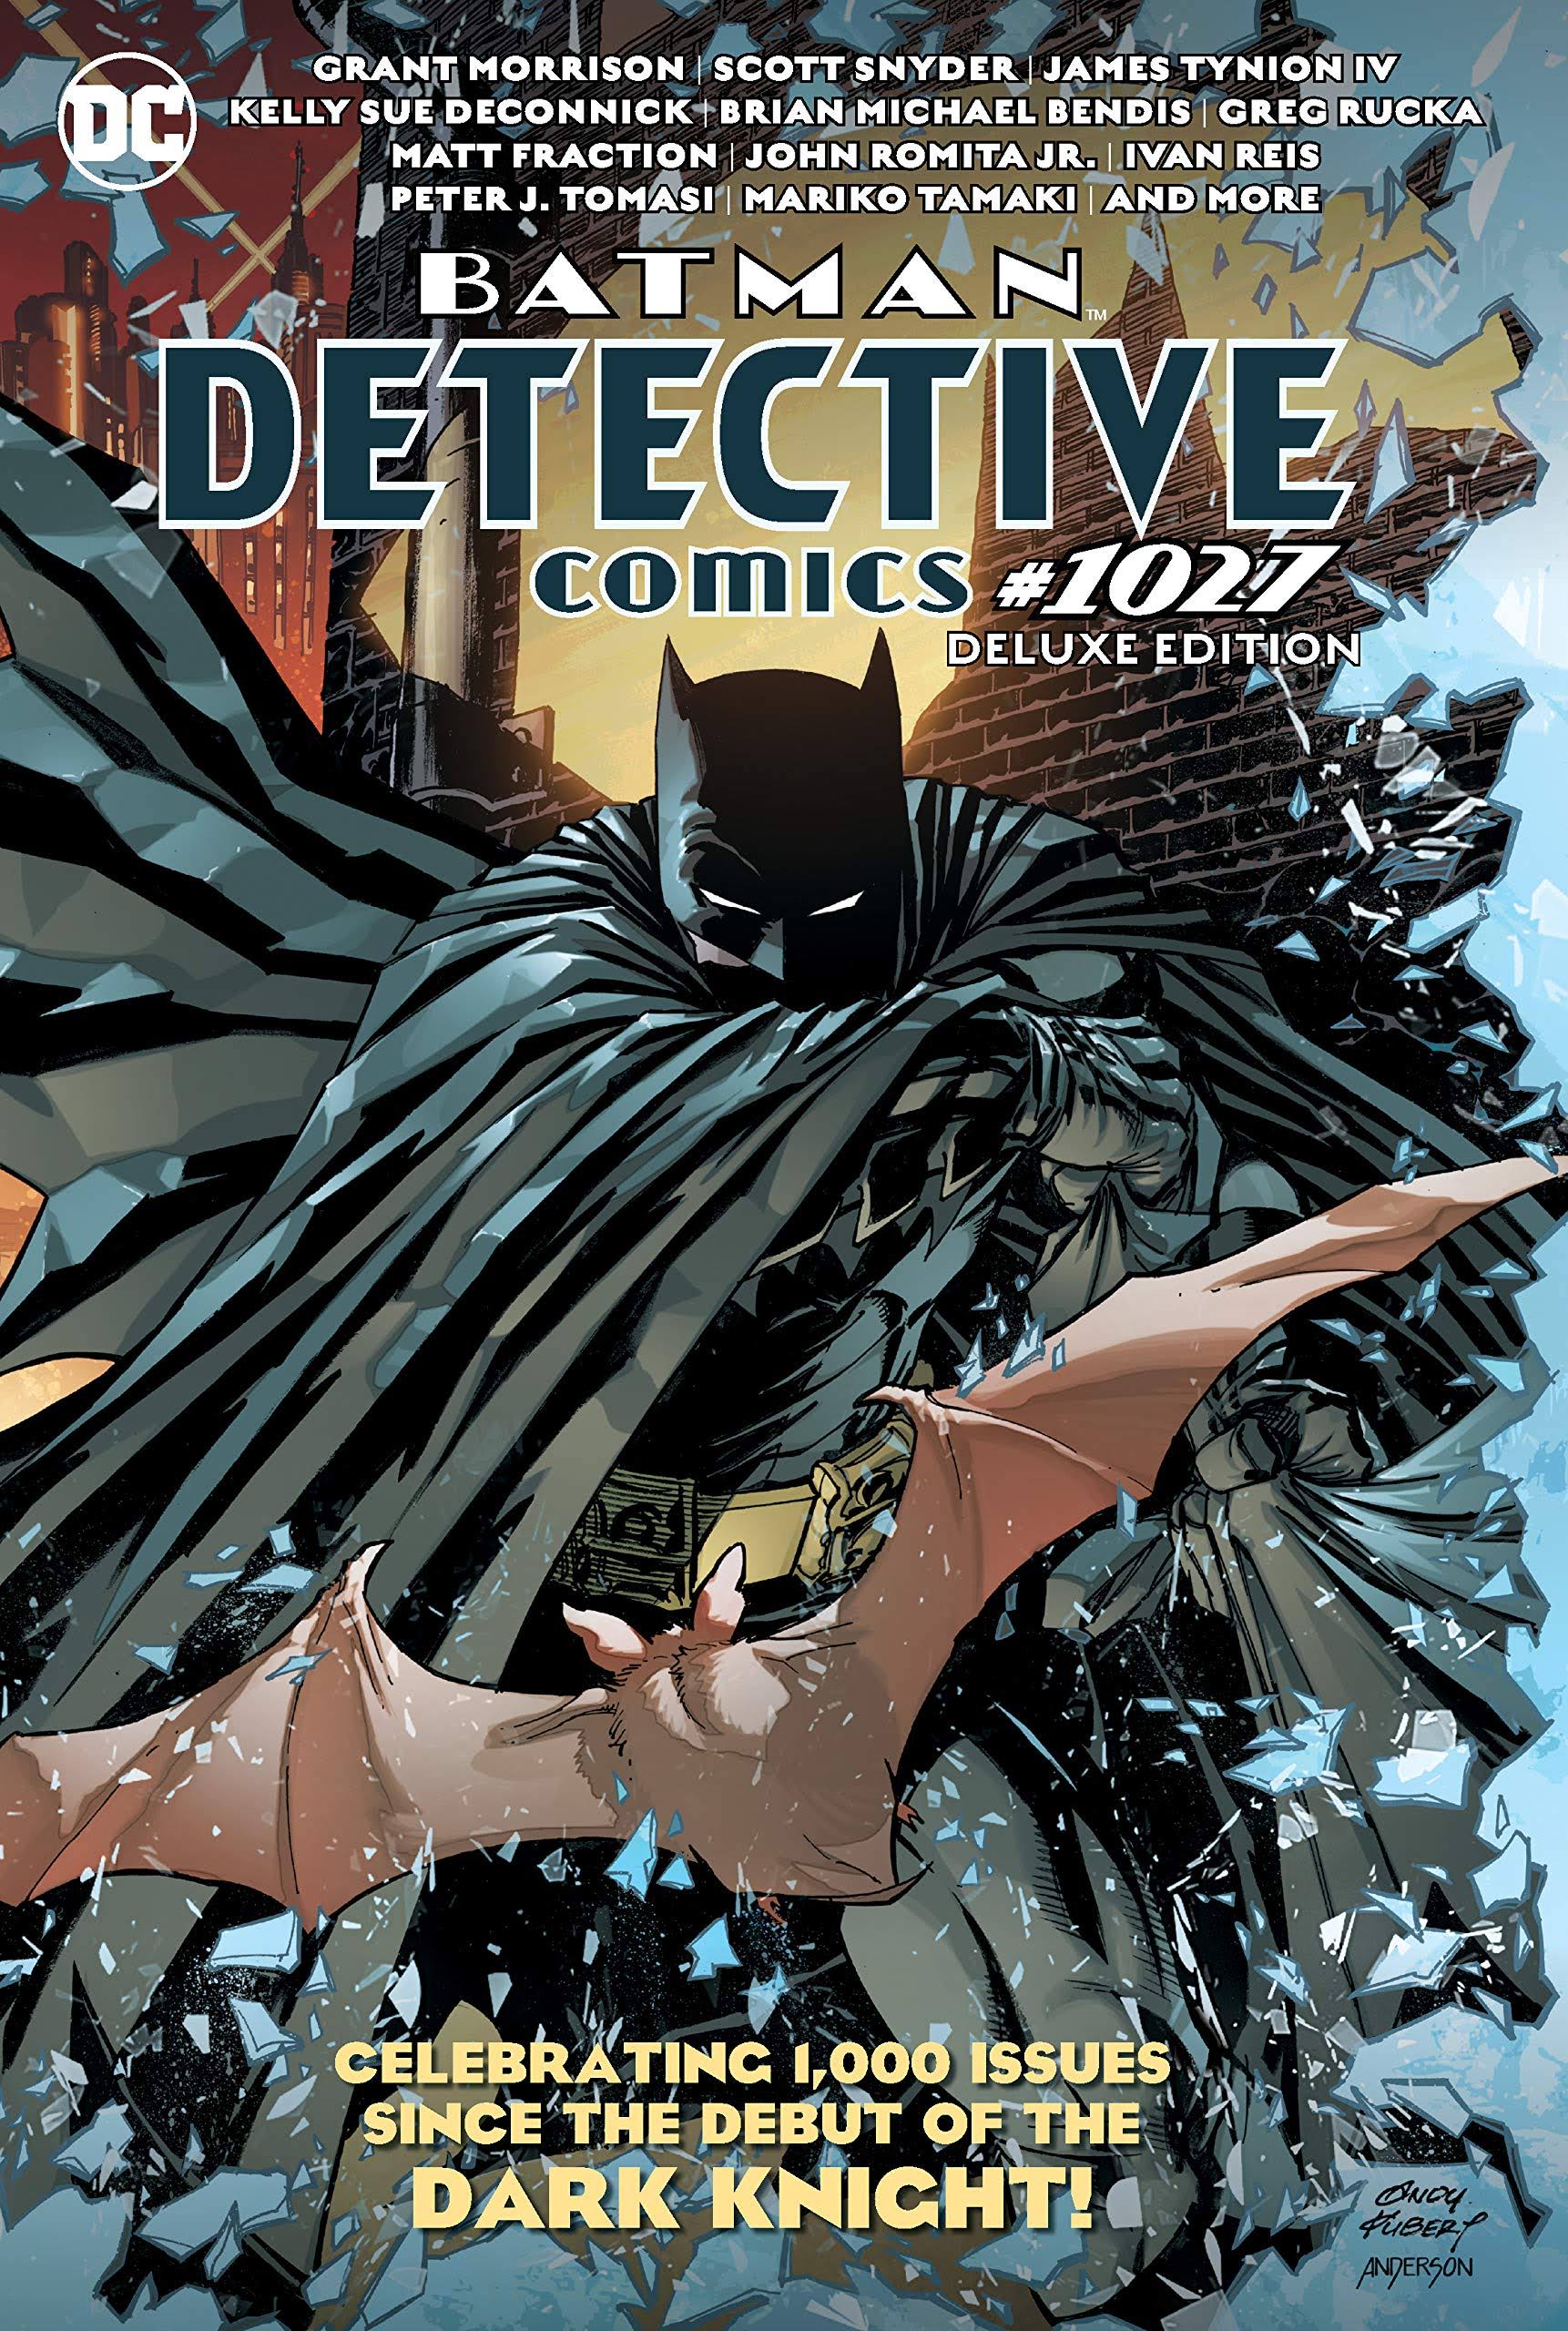 Batman Detective Comics #1027 Deluxe edition